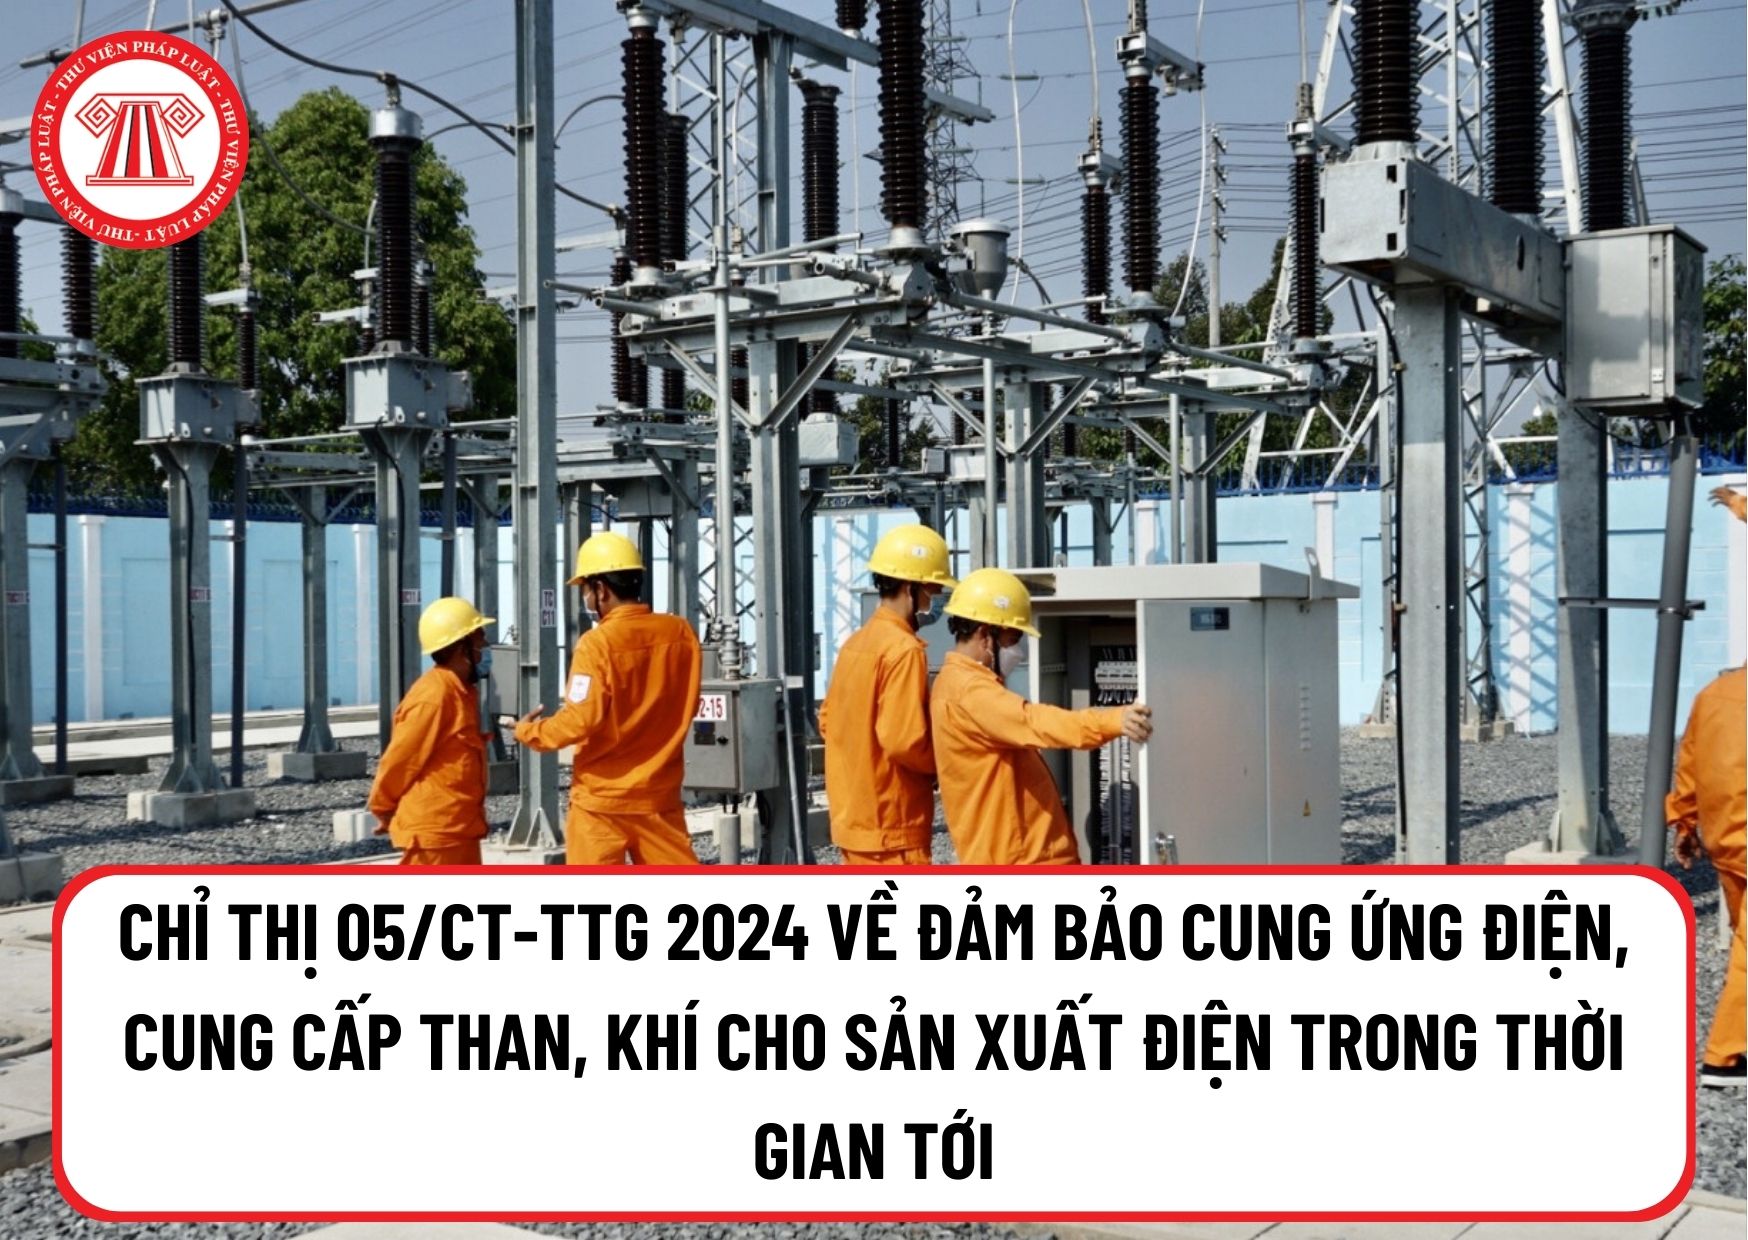 Chỉ thị 05/CT-TTg 2024 về đảm bảo cung ứng điện, cung cấp than, khí cho sản xuất điện trong thời gian tới?